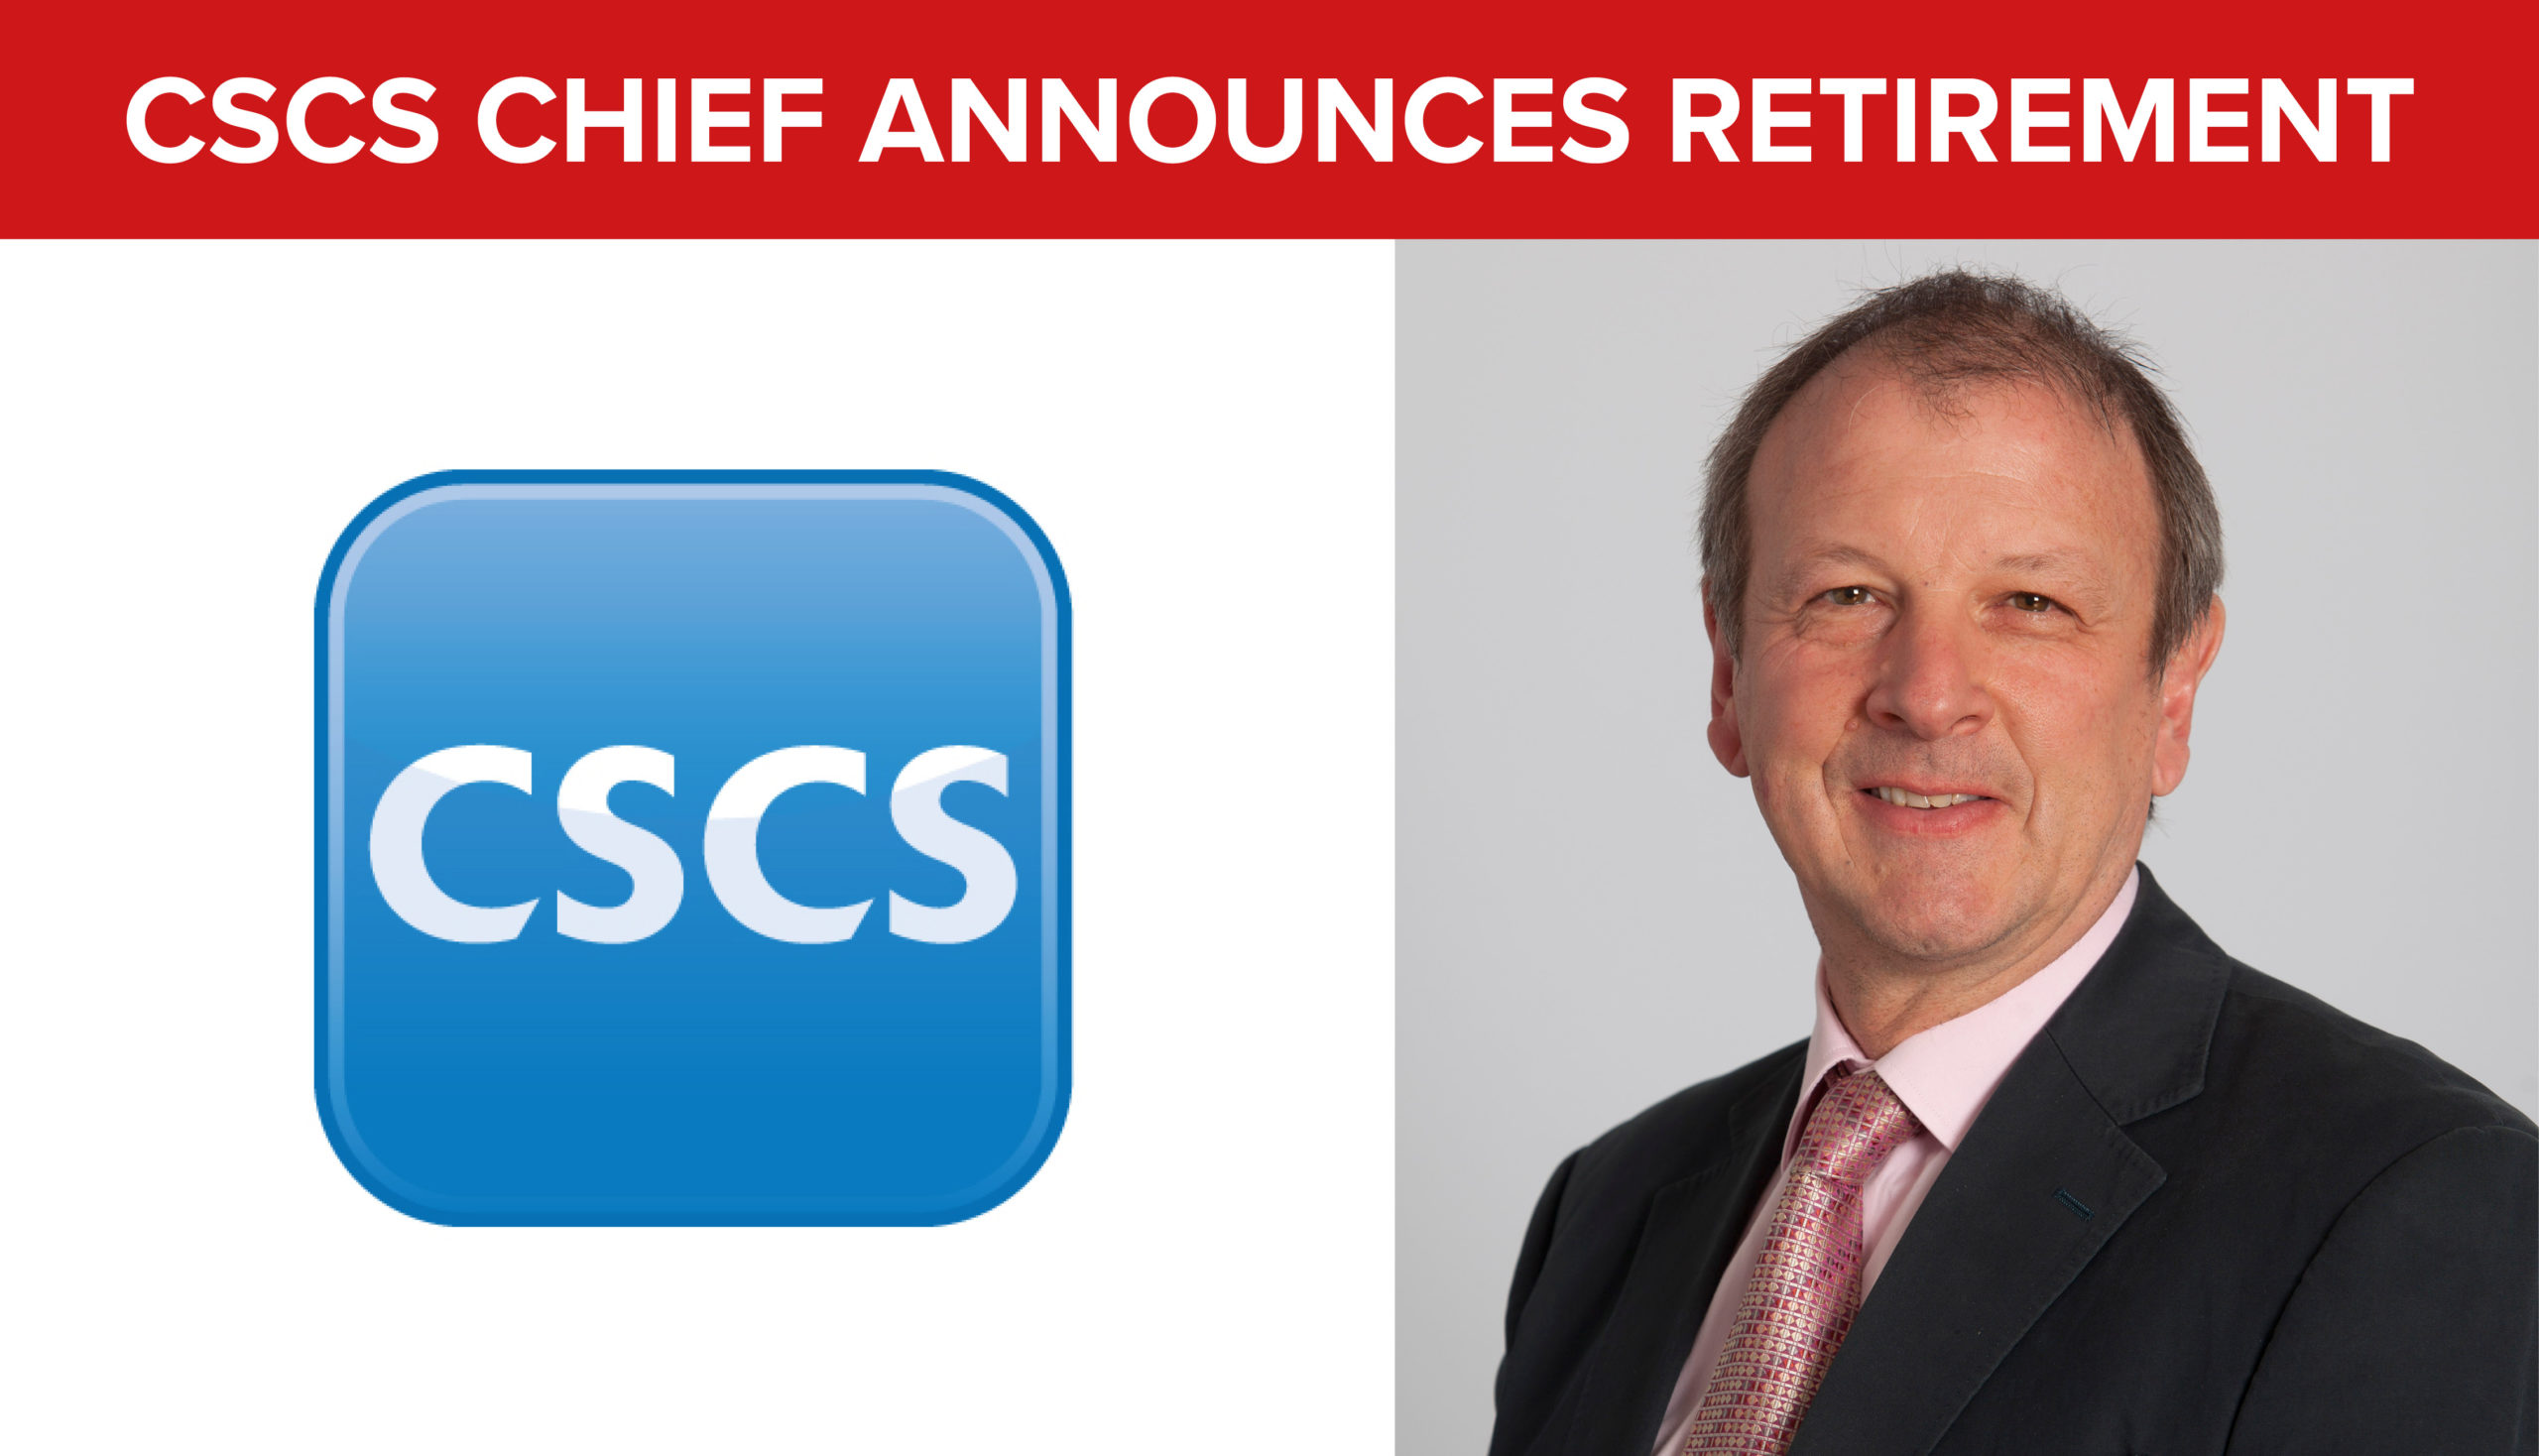 CSCS Chief Executive Graham Wren retires